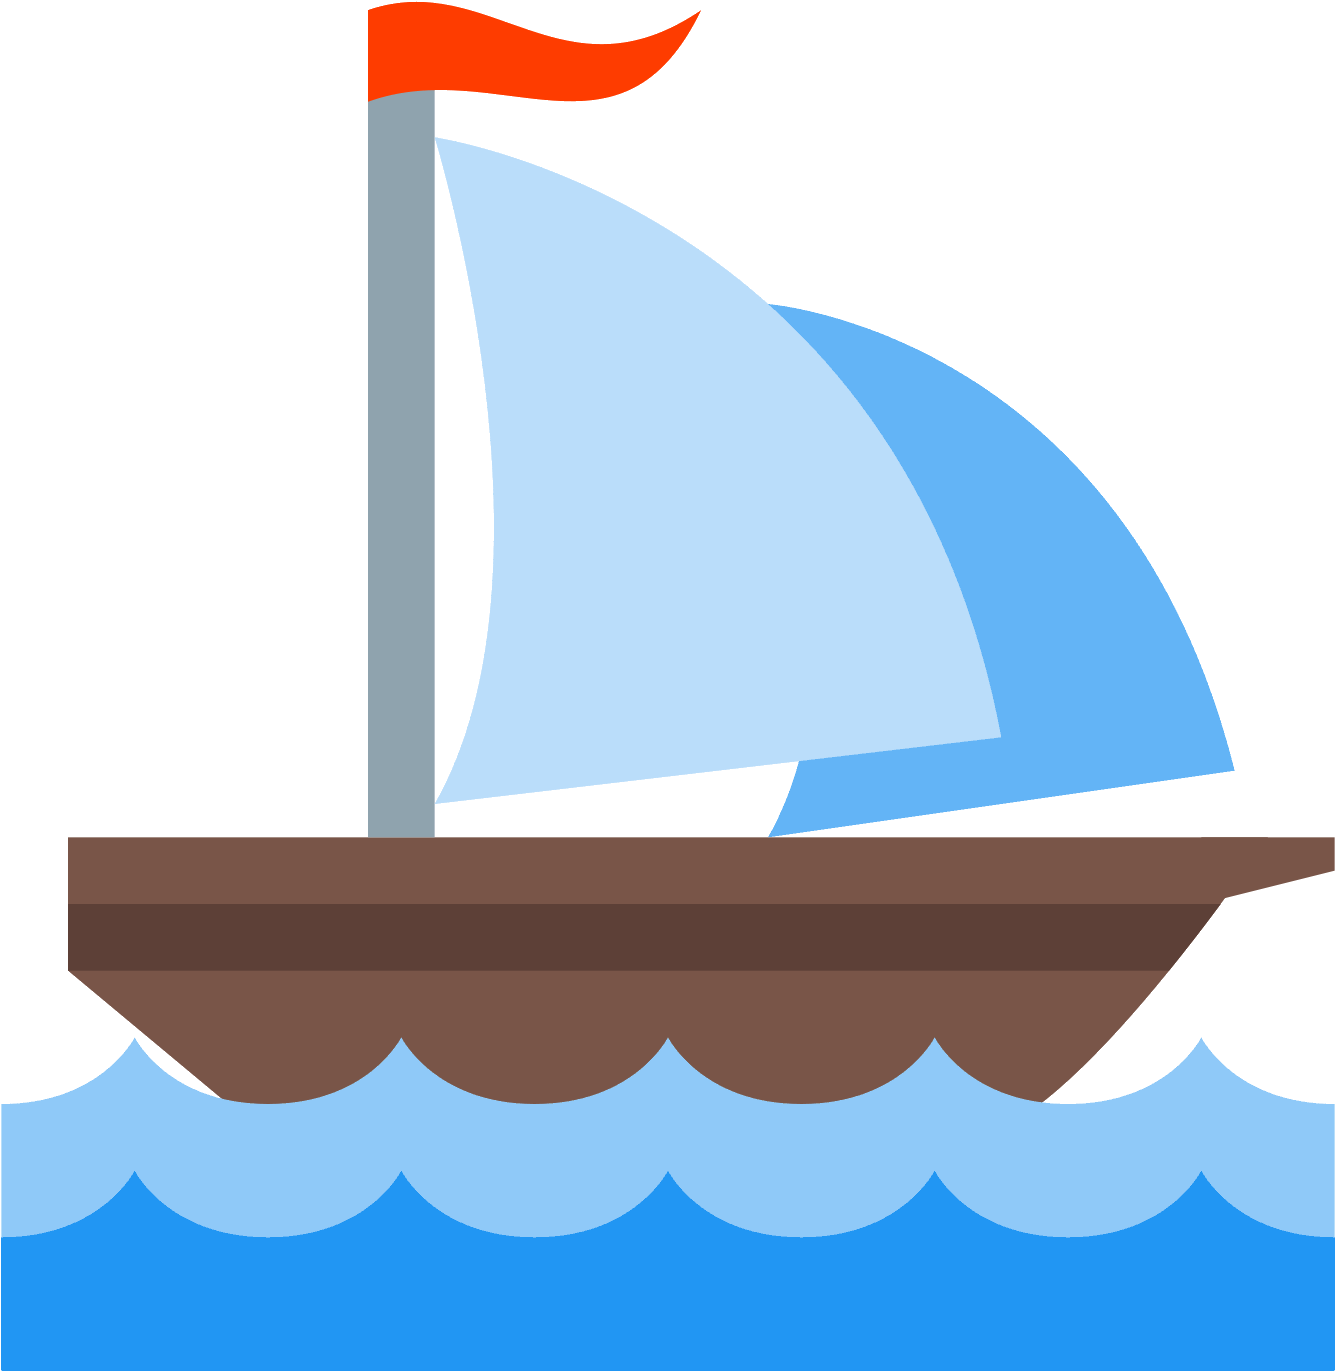 A Cartoon Of A Sailboat